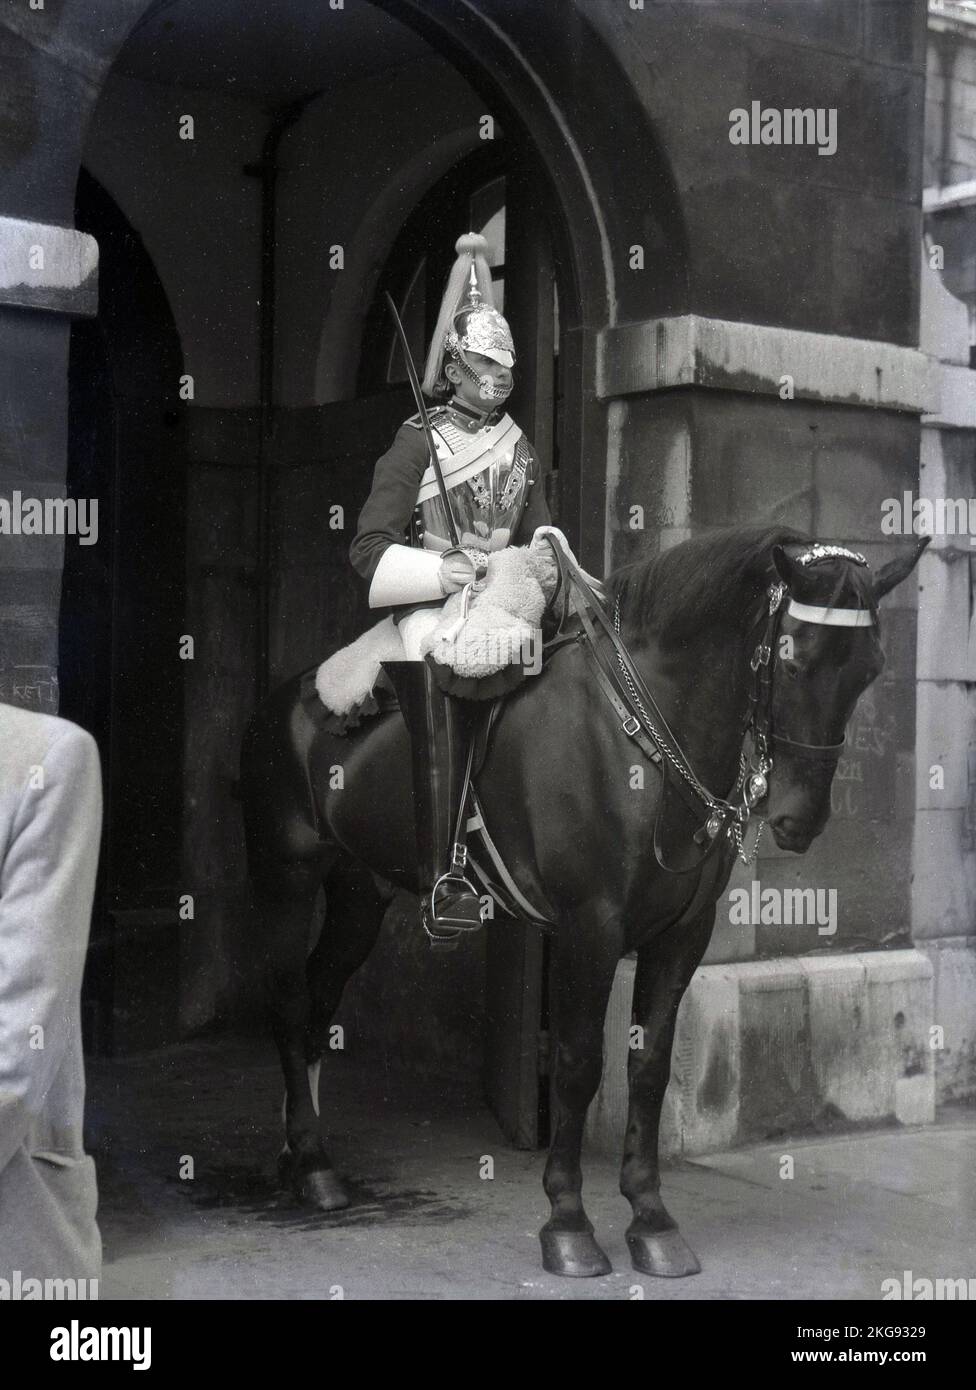 1950s, storico, una guardia di cavalli montata all'ingresso cerimoniale di St James e Buckingham Palace, il quartier generale della Household Cavalry Mounted Regiment, Westminster, Londra, Inghilterra, Regno Unito. Foto Stock